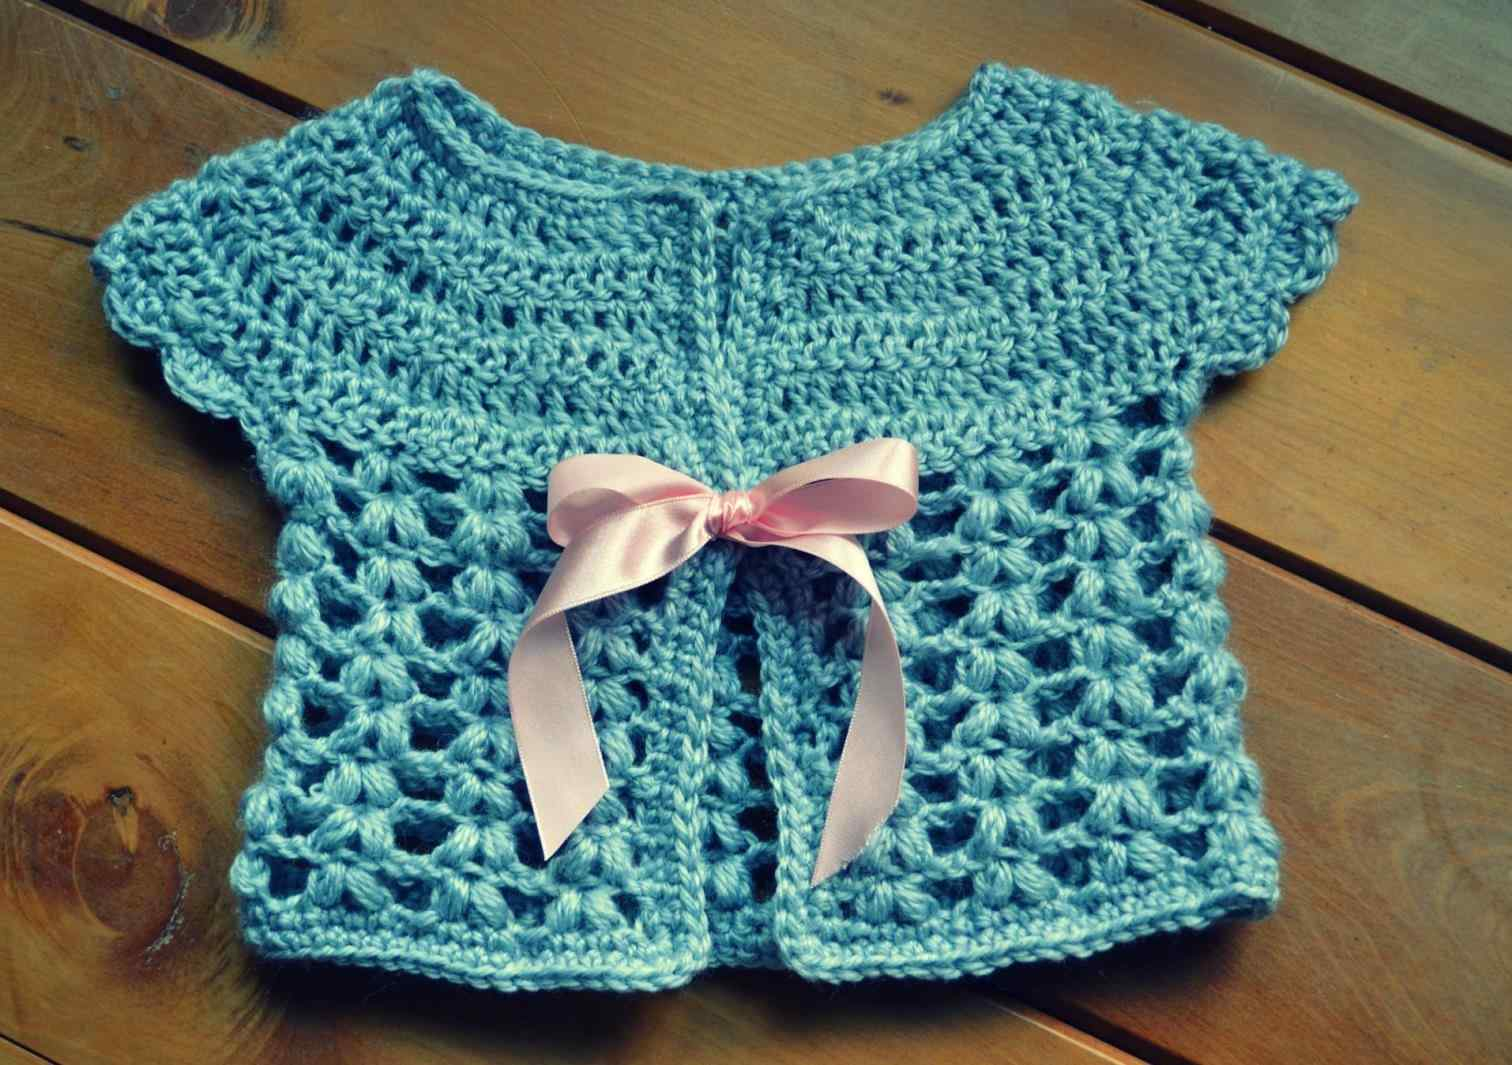 Crochet Baby Boy Sweater Pattern Free Brag Boy Patternrhcraftbragcom Craft Crochet Ba Sweater Patterns